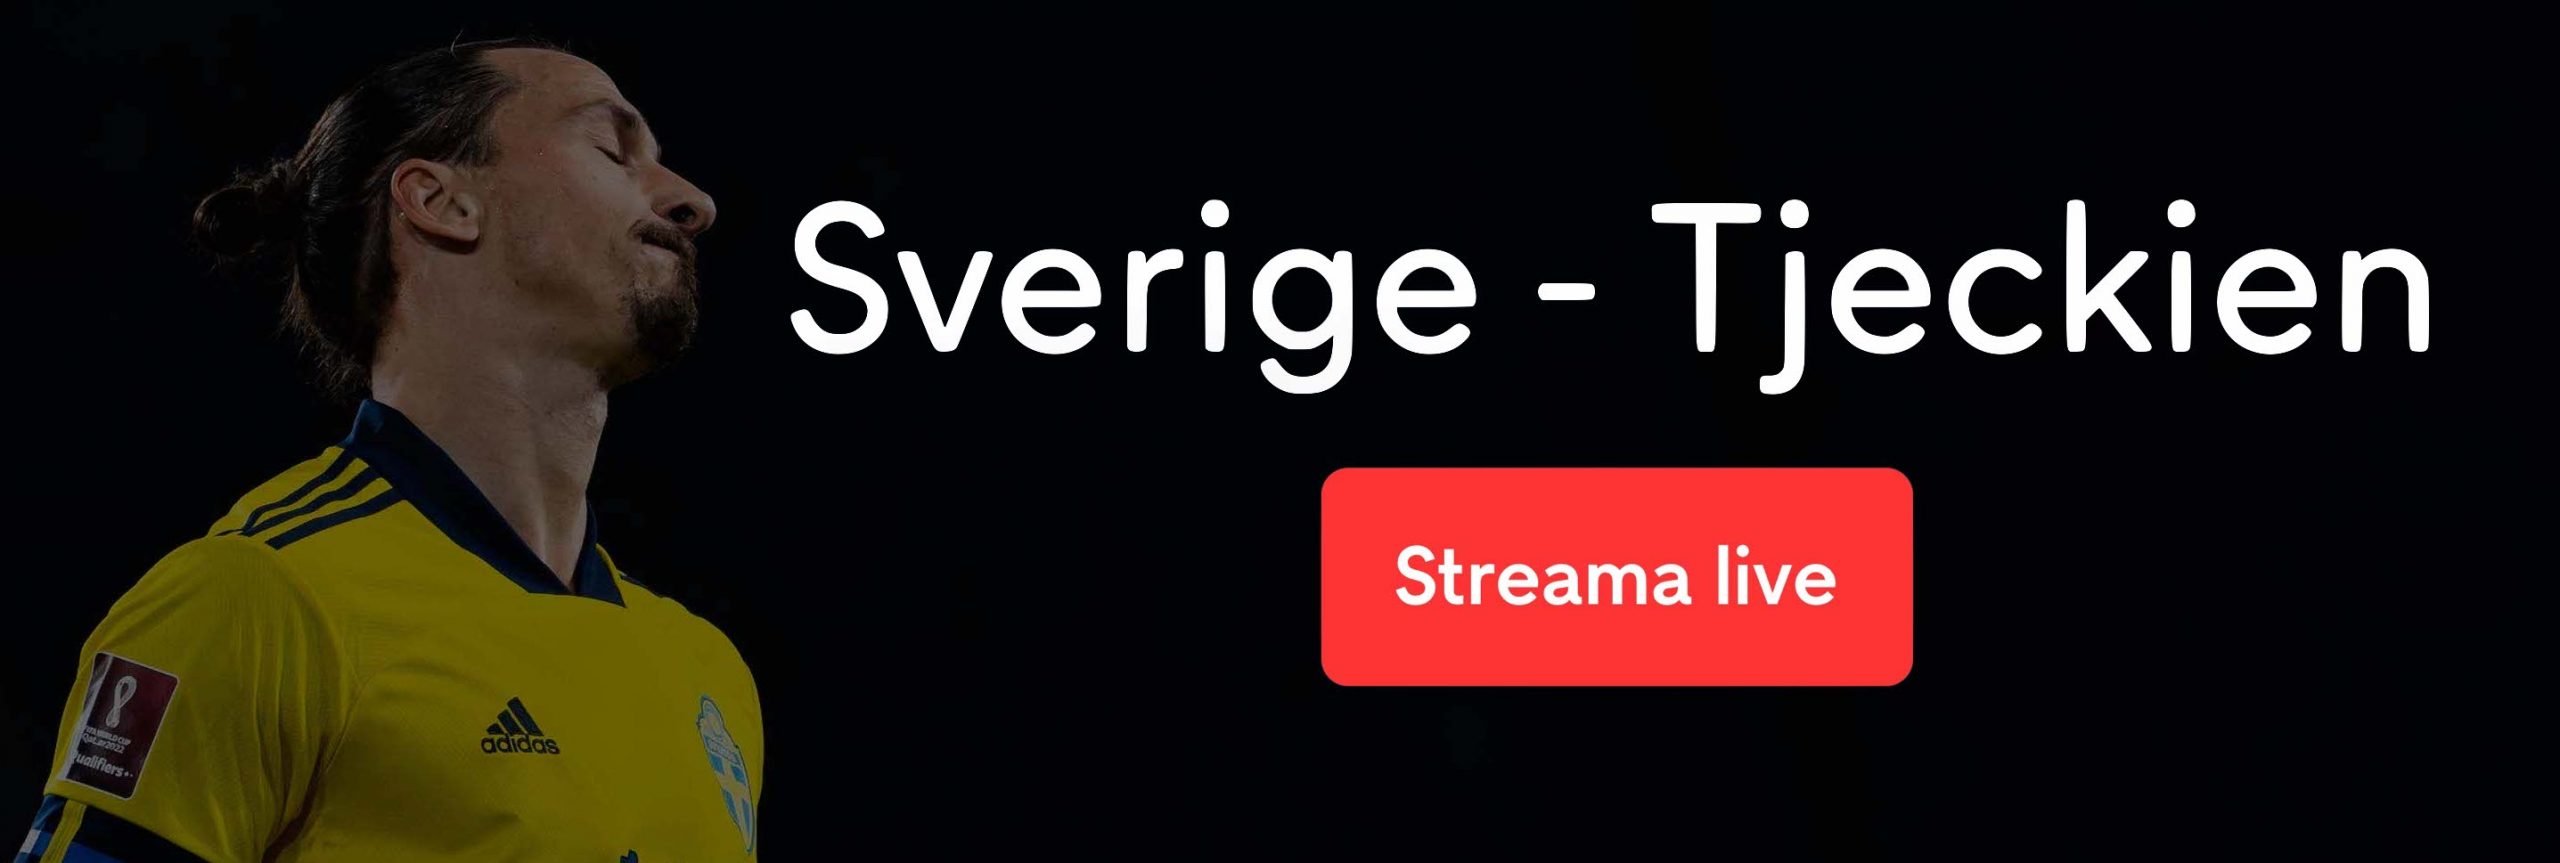 Sverige Tjeckien free stream live – streama Sverige Tjeckien live stream online!